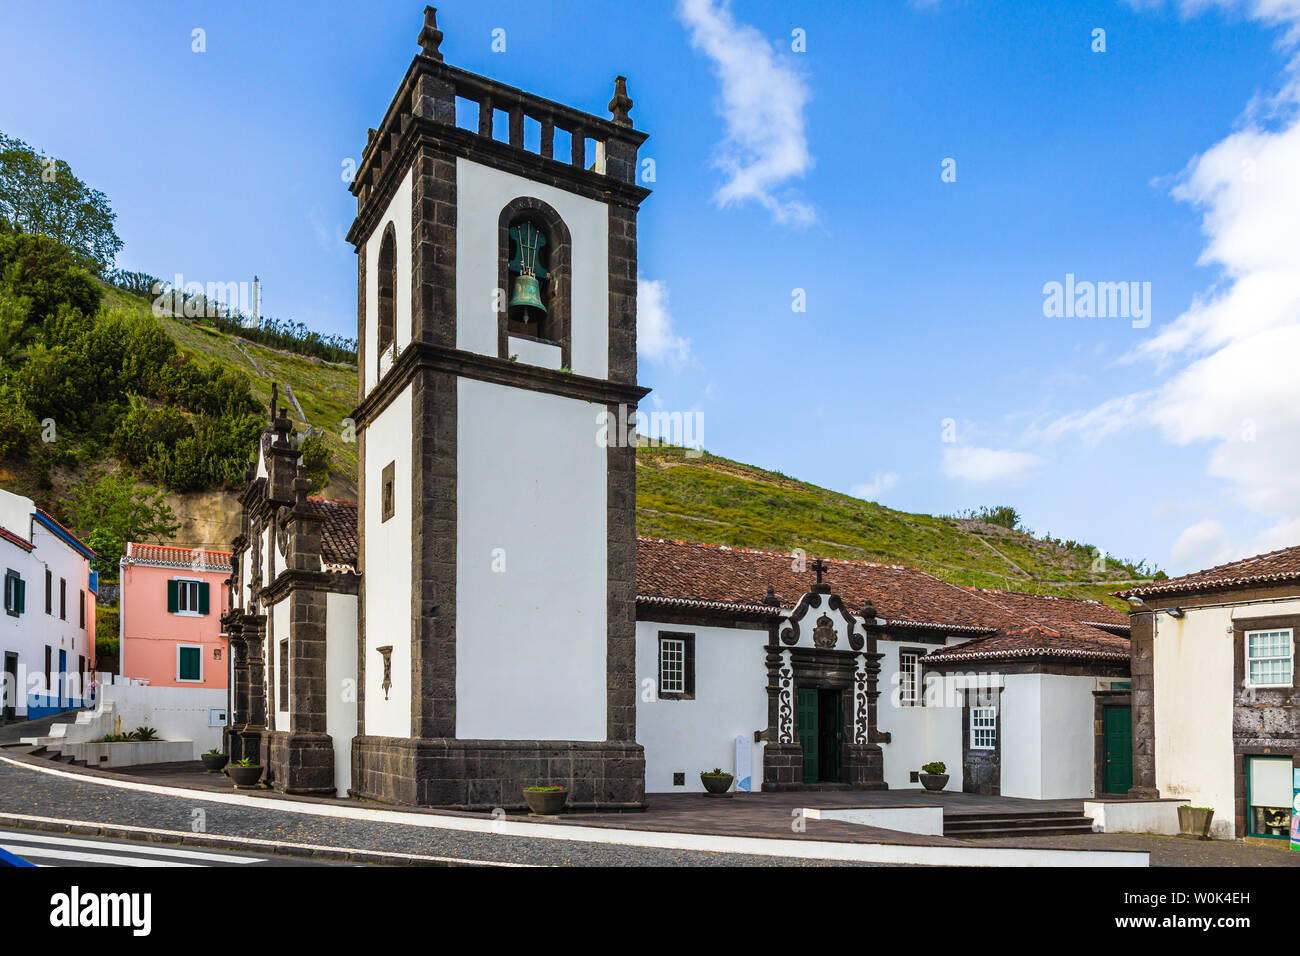 Church and Centro De Turismo in Povoacao on Sao Miguel Island, Azores archipelago, Portugal Stock Photo